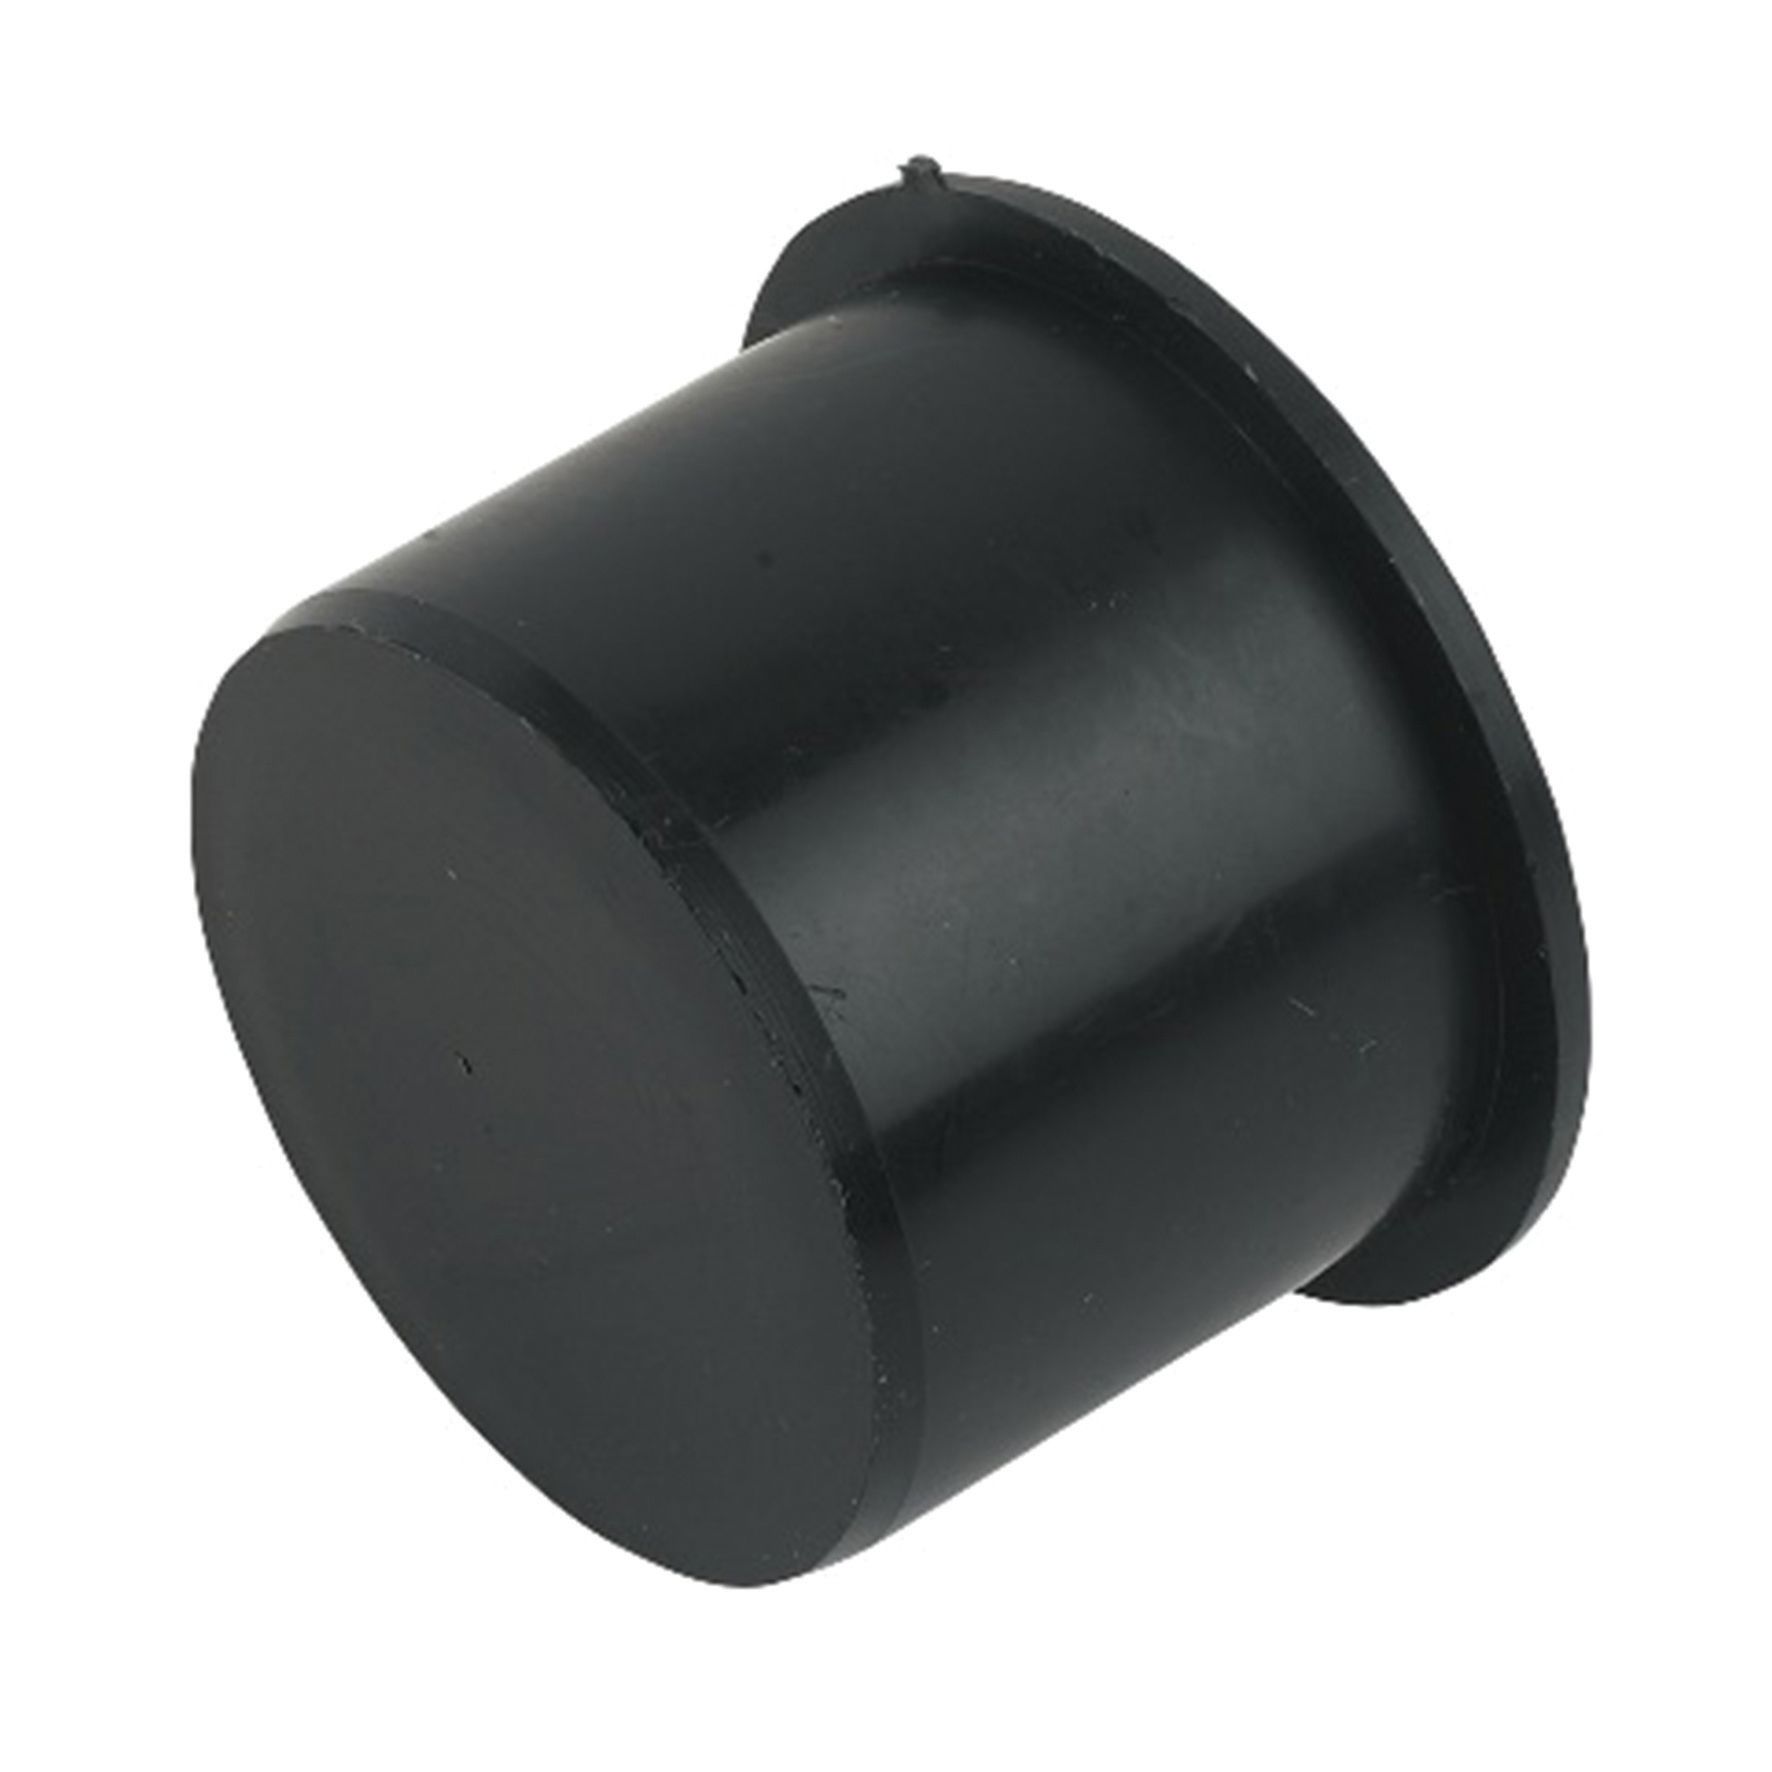 Image of FloPlast WP31B Push-fit Waste Socket Plug - Black 40mm